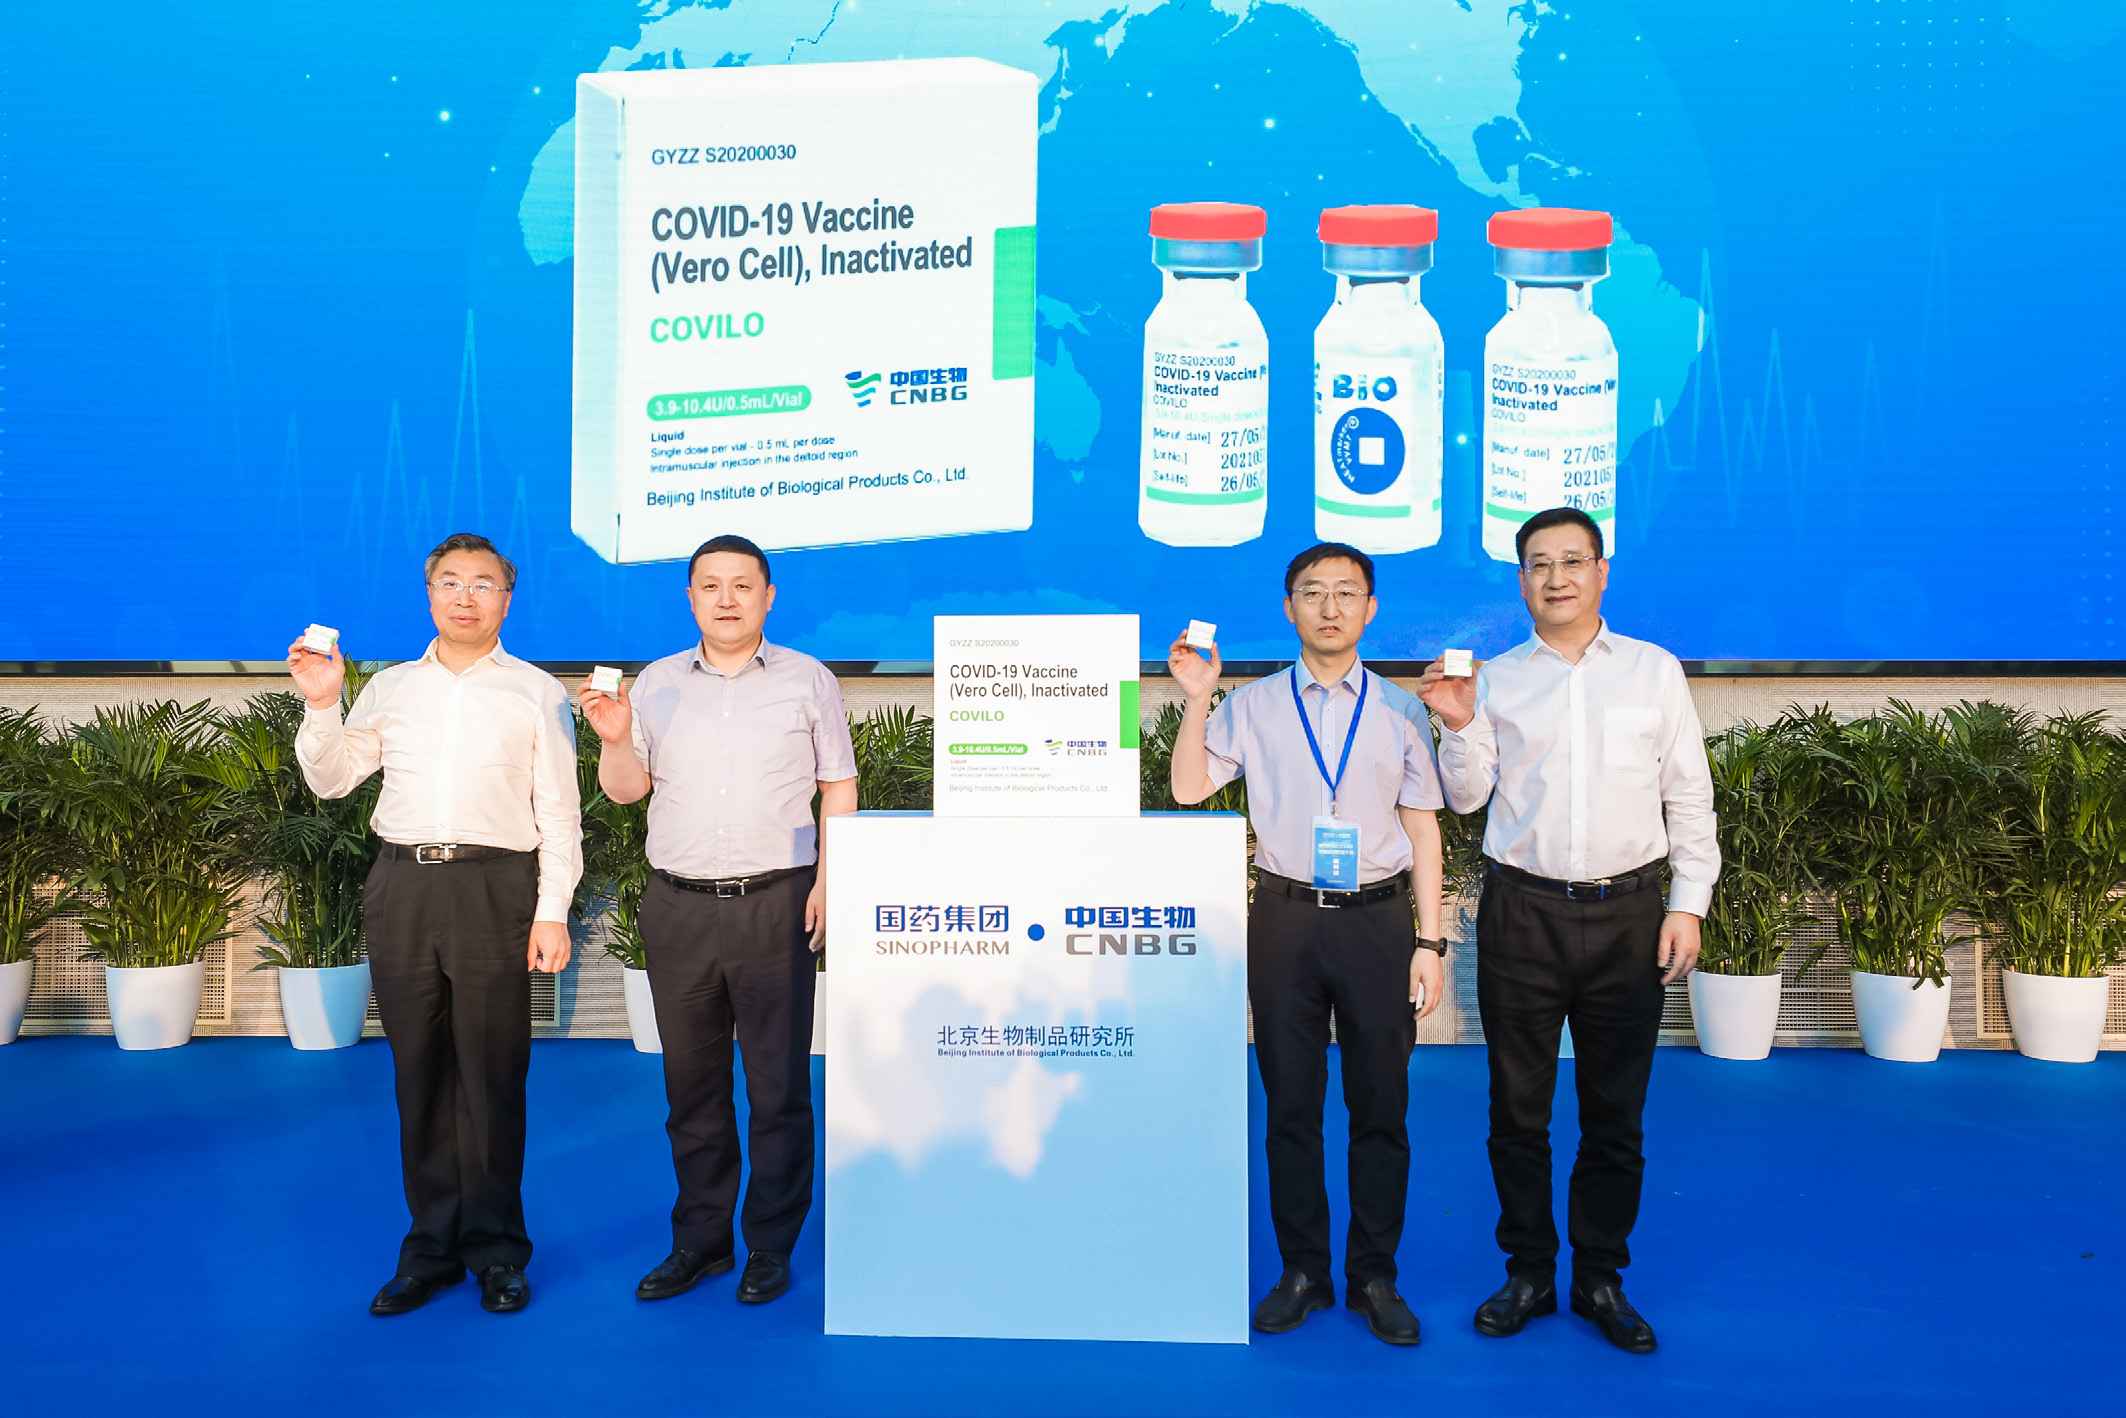 2021年6月1日，湖北30选5开奖中国生物北京生物所供应COVAX 首批新冠疫苗下线。这也是中国供应COVAX 的首批新冠疫苗正式下线